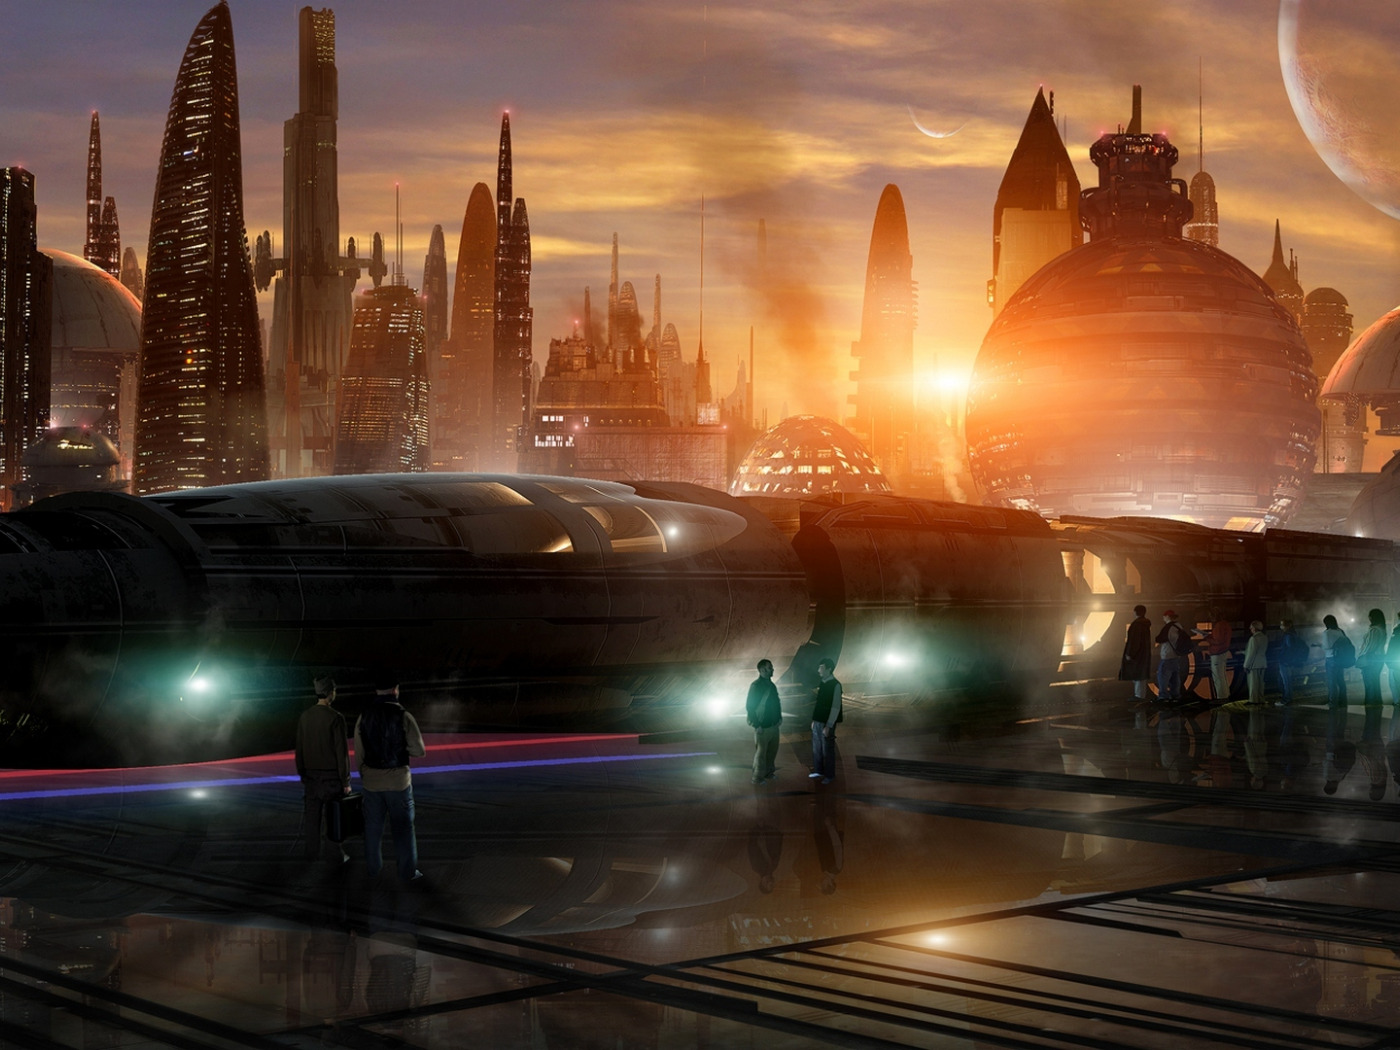 Незабываемое будущее. Космический город. Город будущего. Космический город будущего. Будущее фантастика.